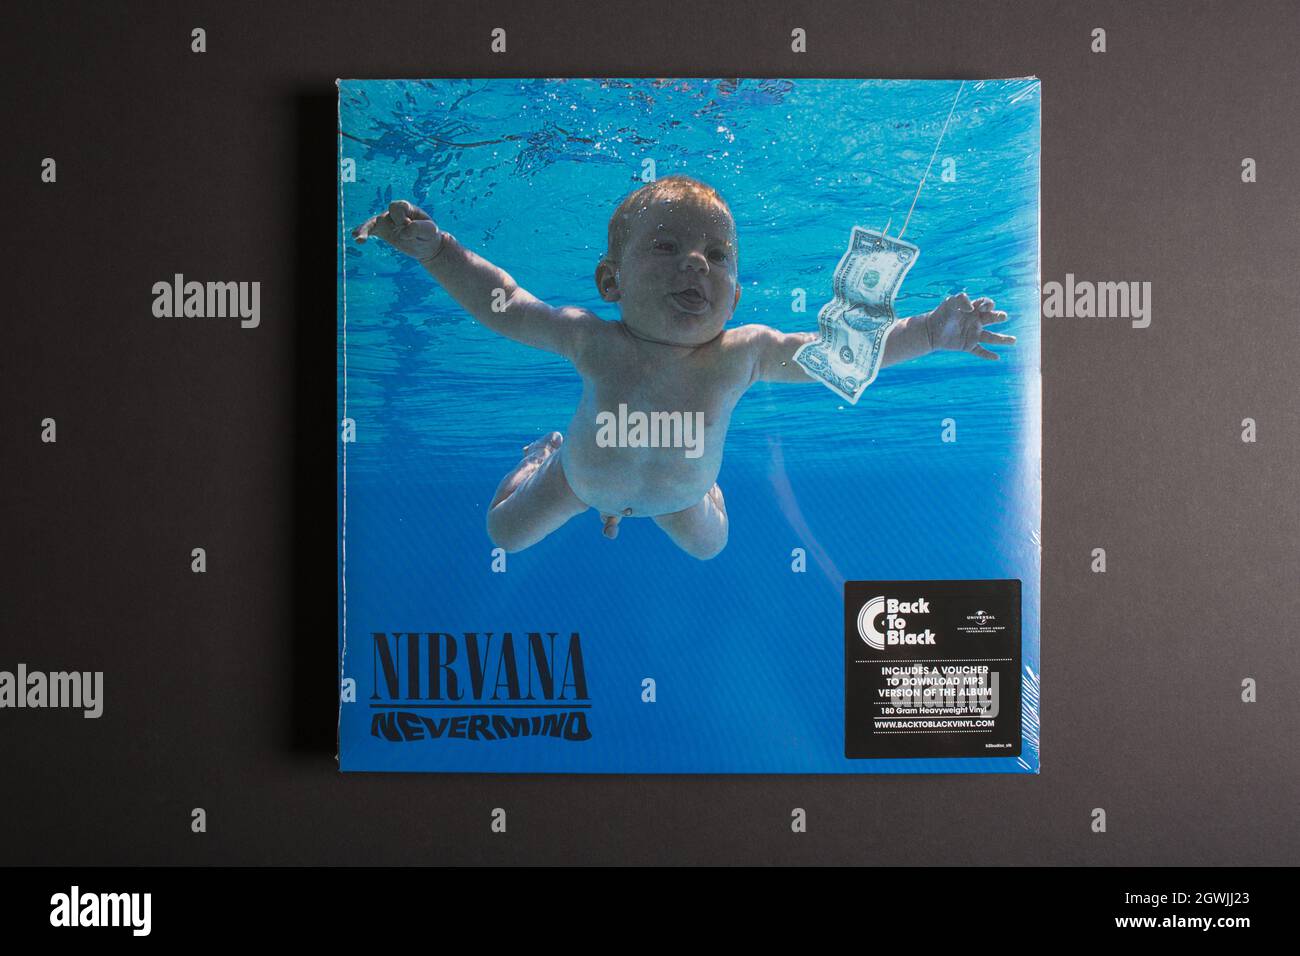 Moskau, Russland - 3. Oktober 2021: Aus der Perspektive des Nevermind-Albums von Nirvana. Sealed LP Vinyl-Schallplatte. Stockfoto